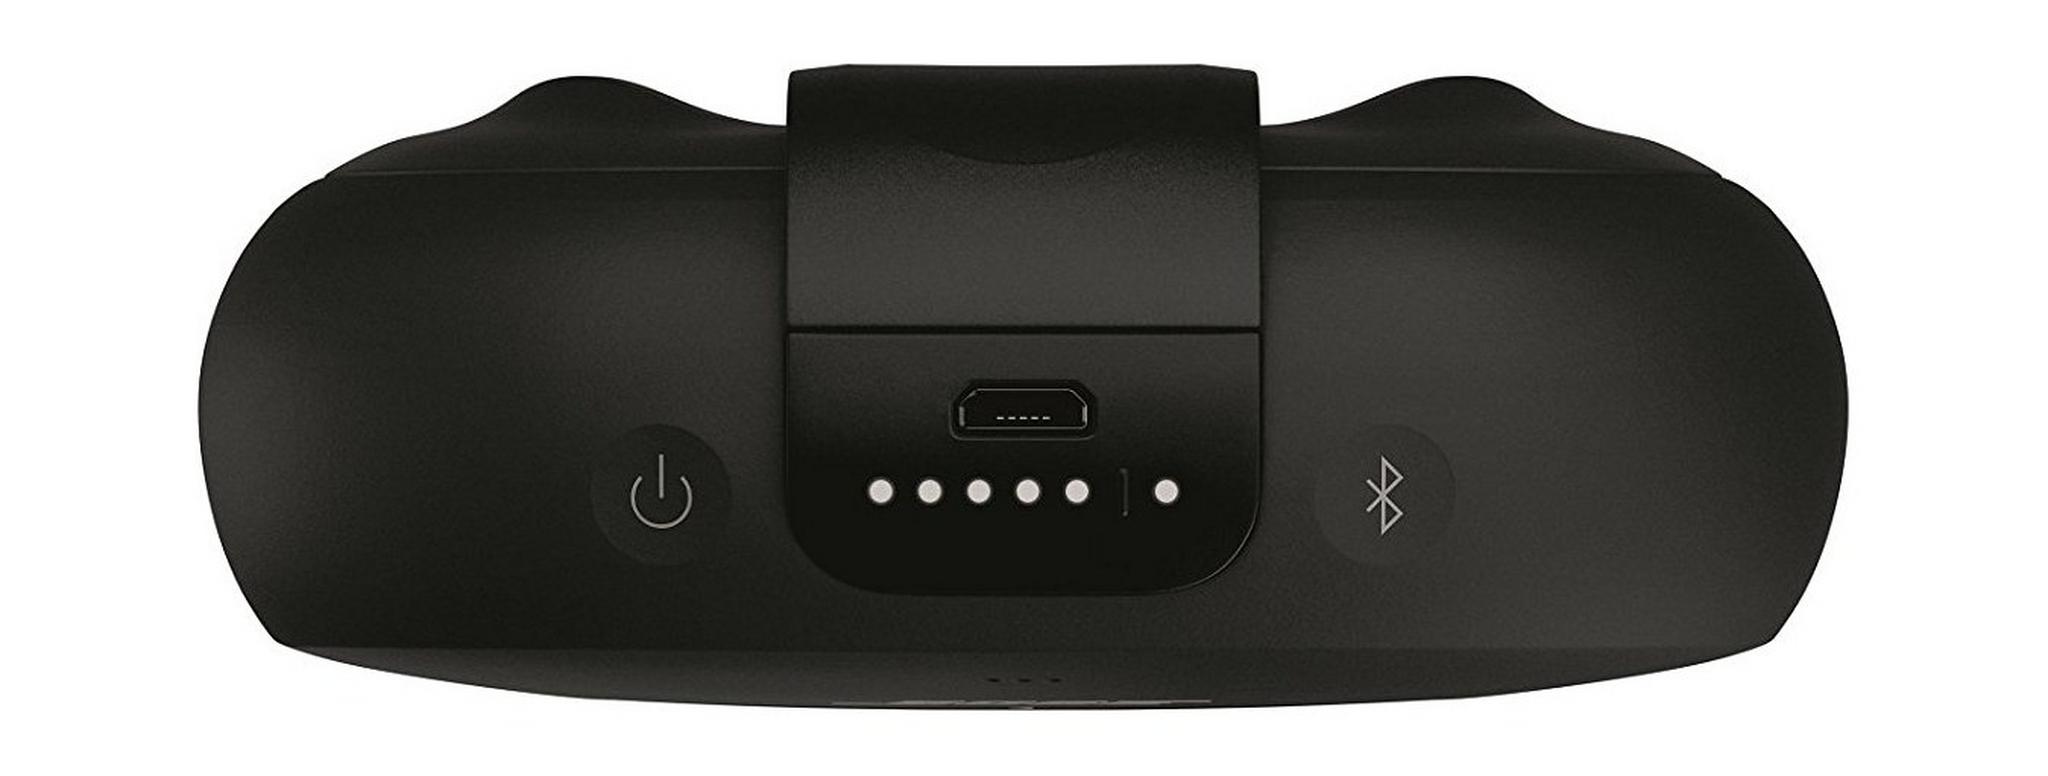 Bose SoundLink Micro Waterproof Bluetooth Speaker - Black